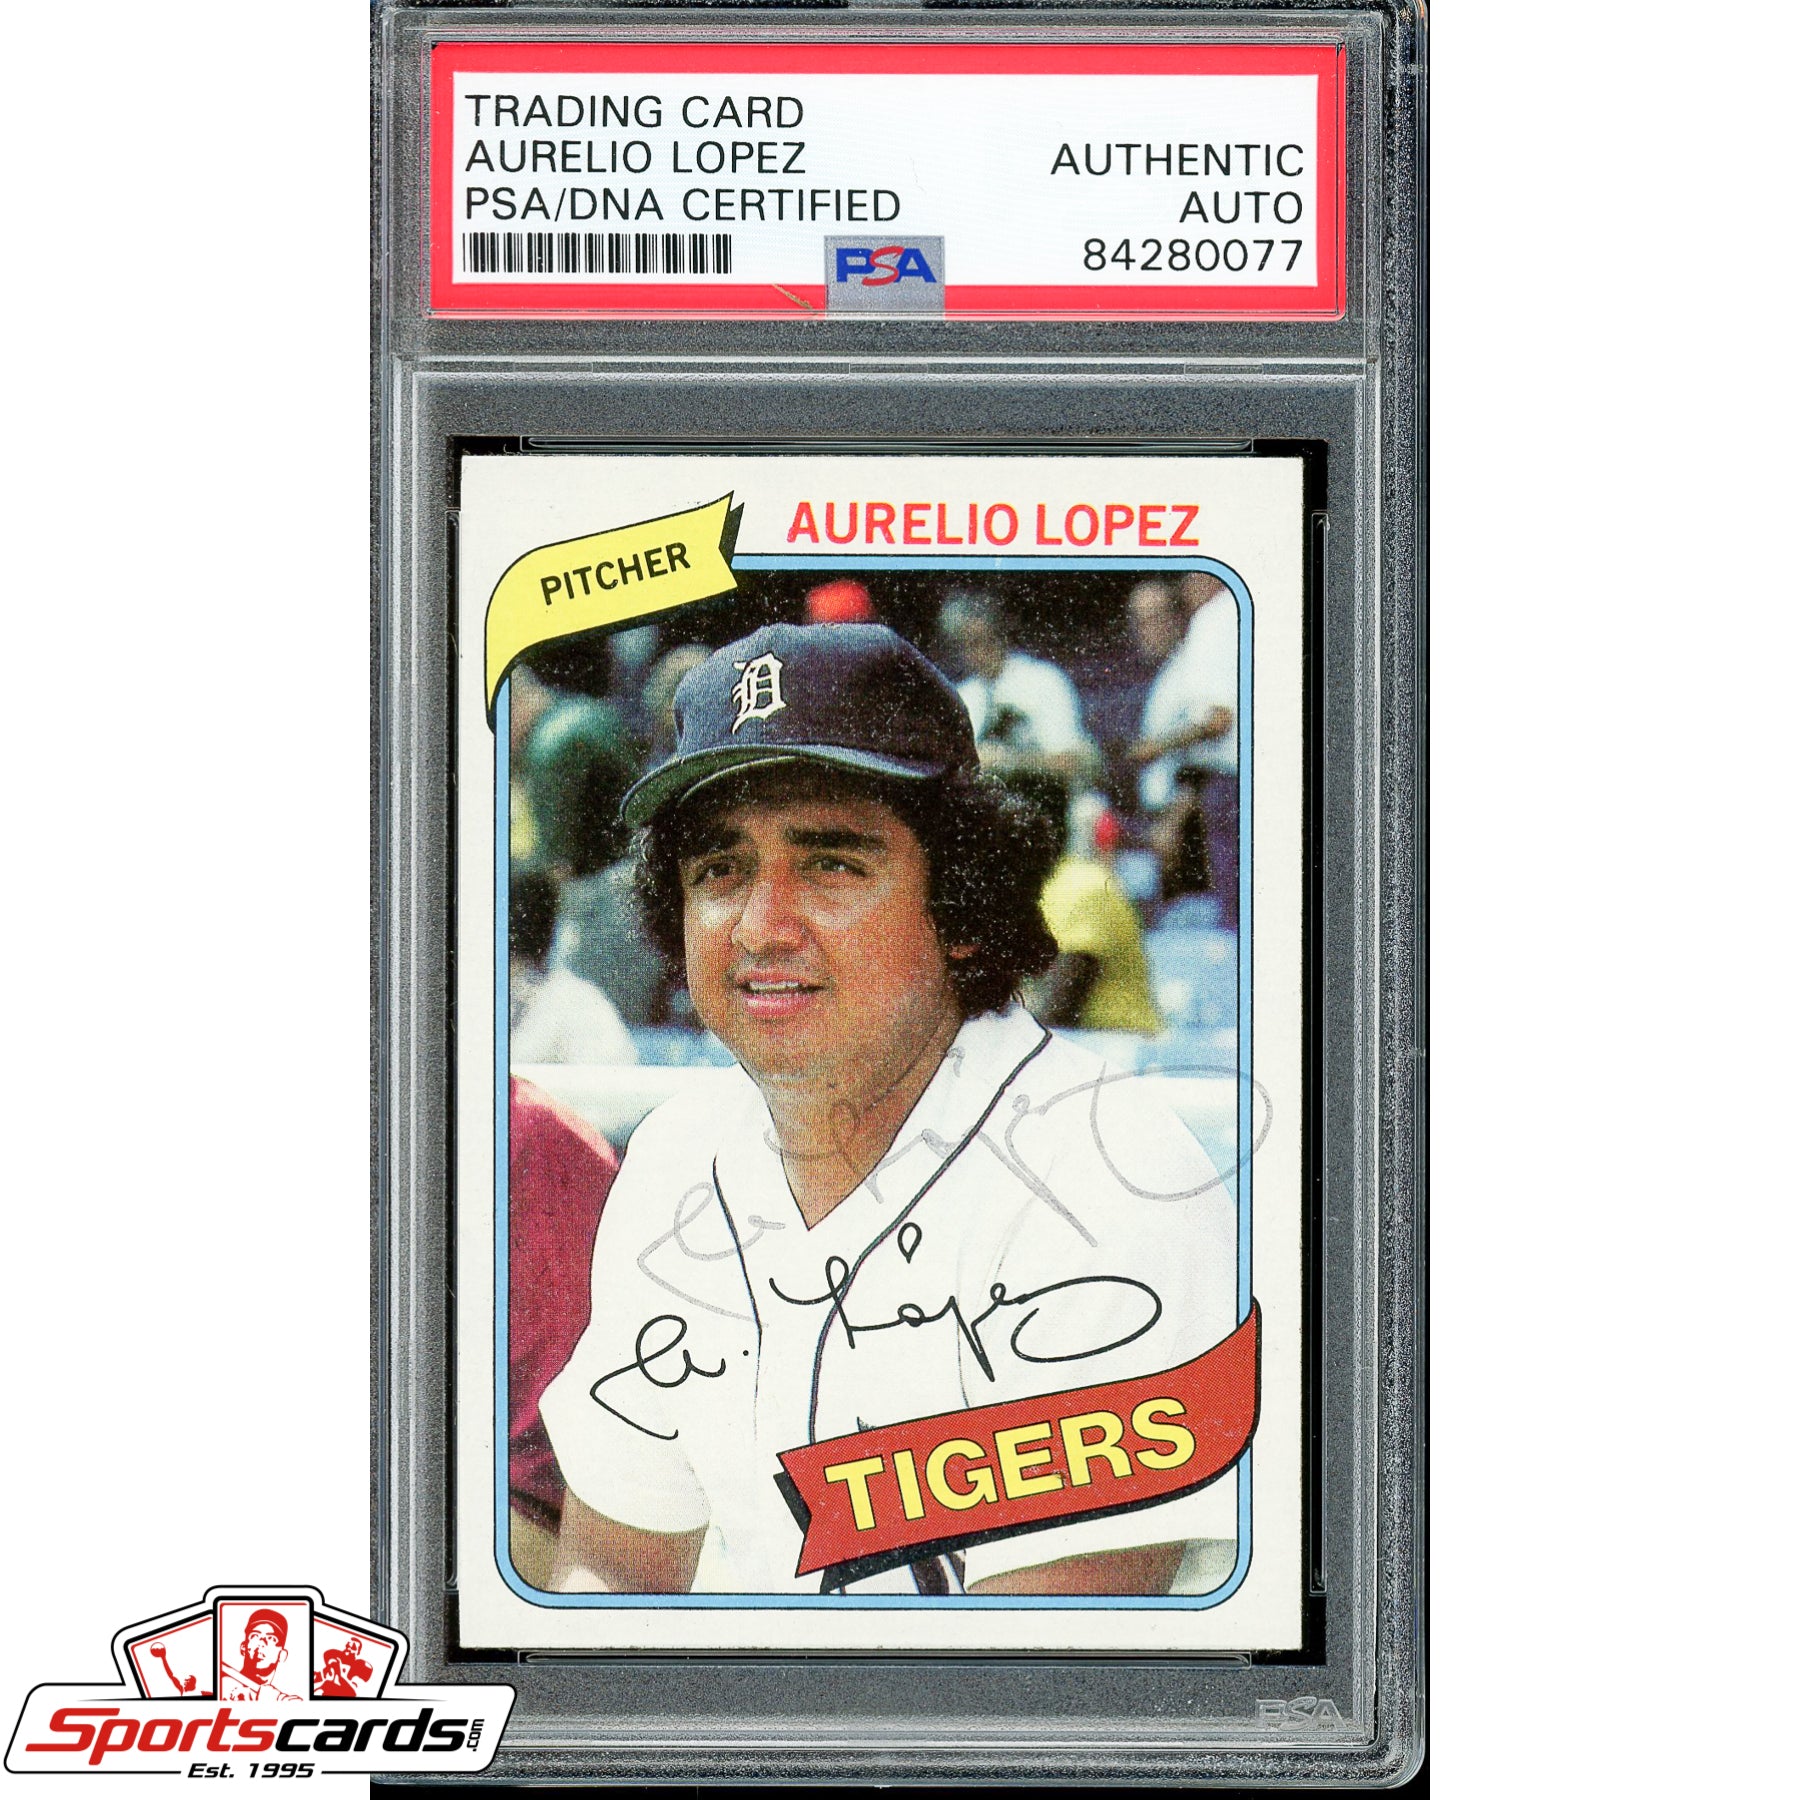 Aurelio Lopez Signed Autographed 1980 Topps Card PSA/DNA #101